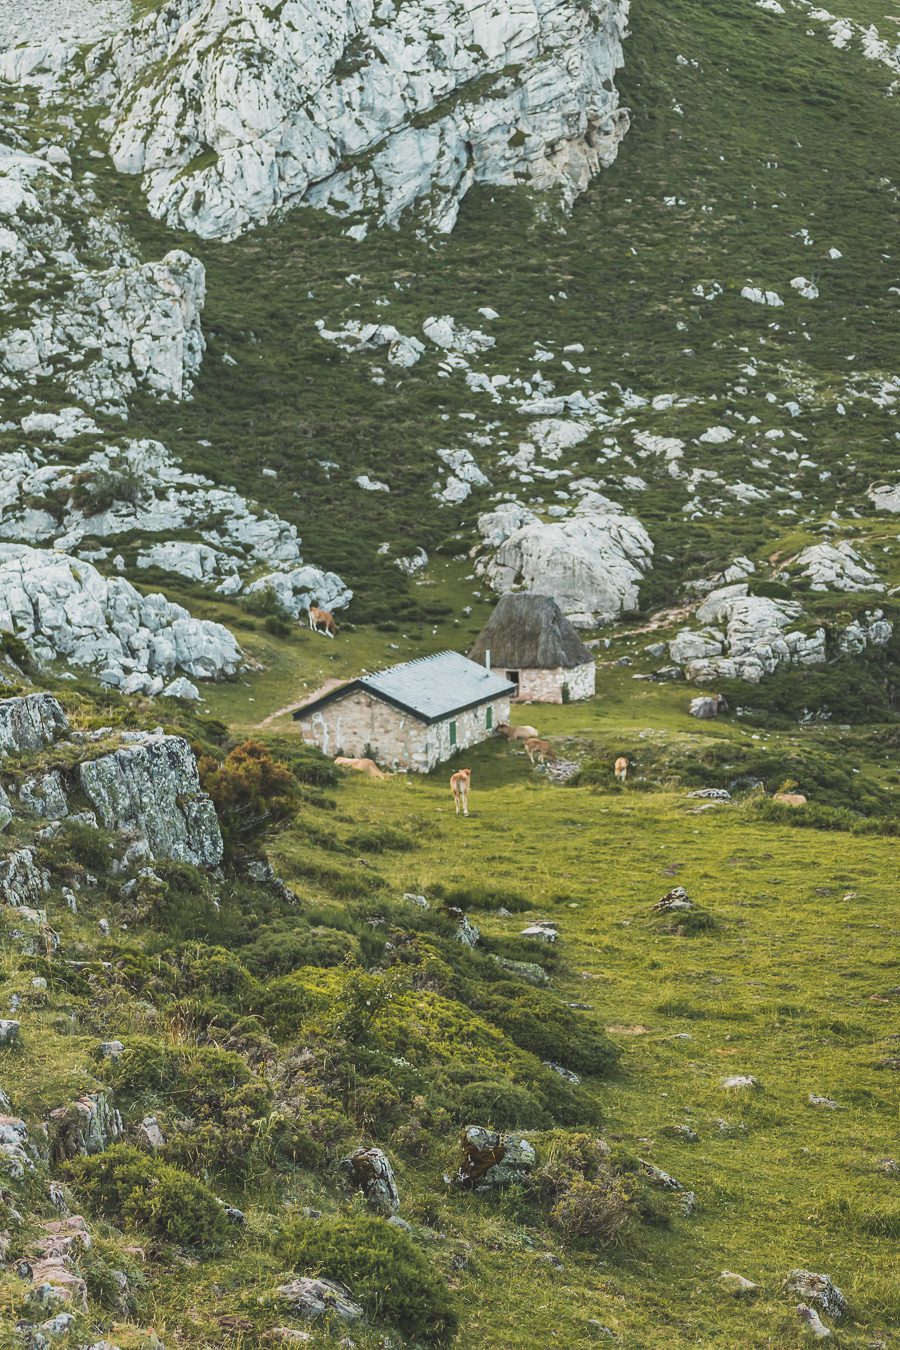 Partez à la découverte d'un paradis naturel : le Parc Naturel de Somiedo dans les Asturies. Plongez dans des paysages époustouflants, entre montagnes majestueuses et vallées verdoyantes. Une aventure inoubliable vous attend. Explorez ce joyau naturel lors d'un road trip en van à travers les Asturies dans le Nord de l'Espagne et faites de belles randonnées. 